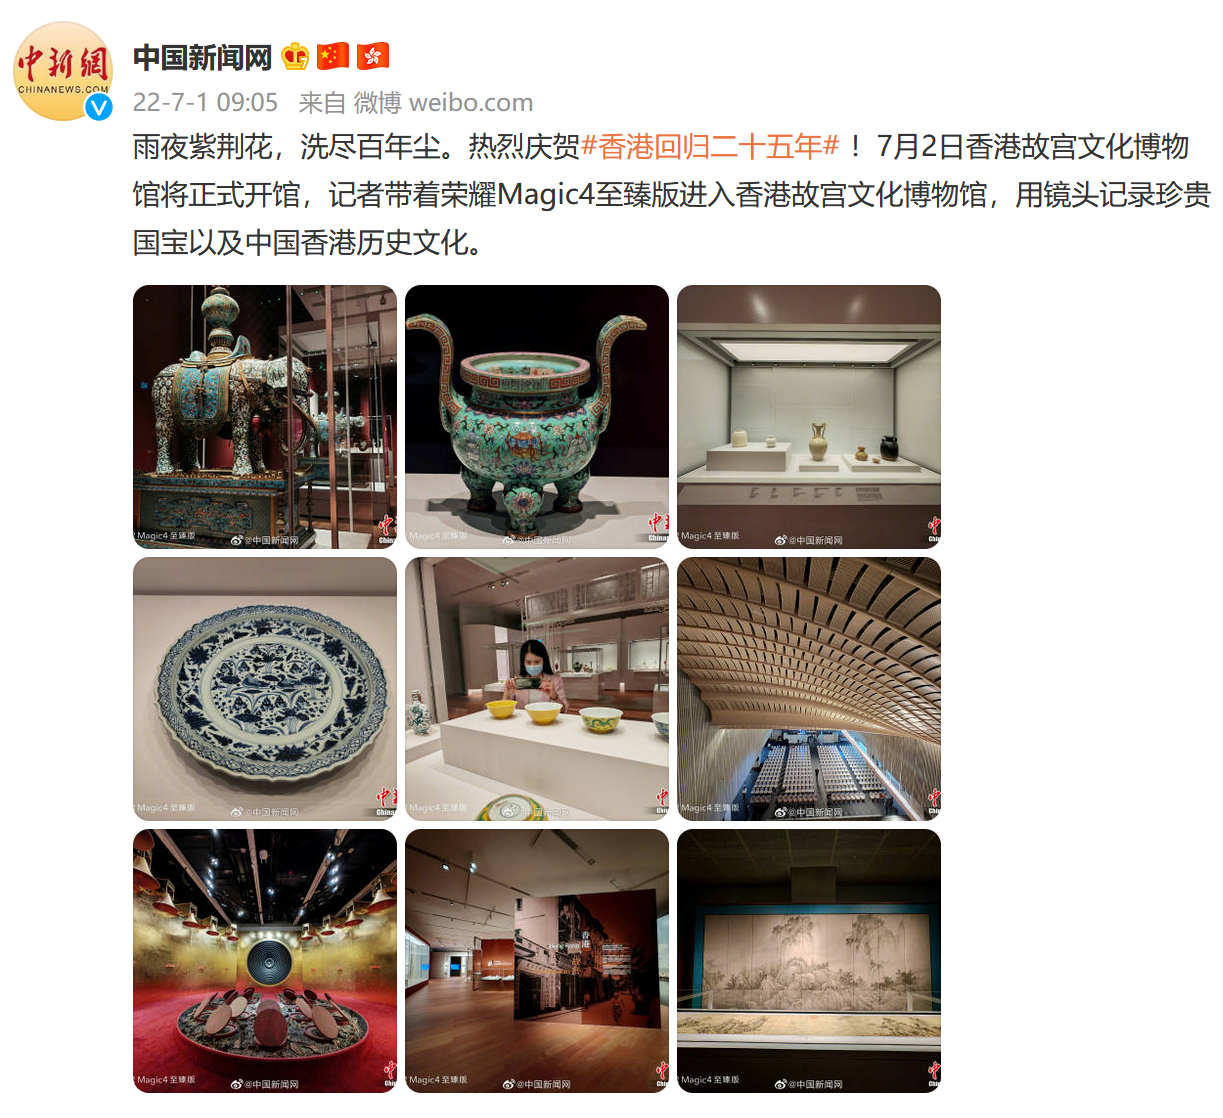 香港故宮文化博物館首波展品曝光，榮耀Magic4系列用影像記錄歷史瑰寶